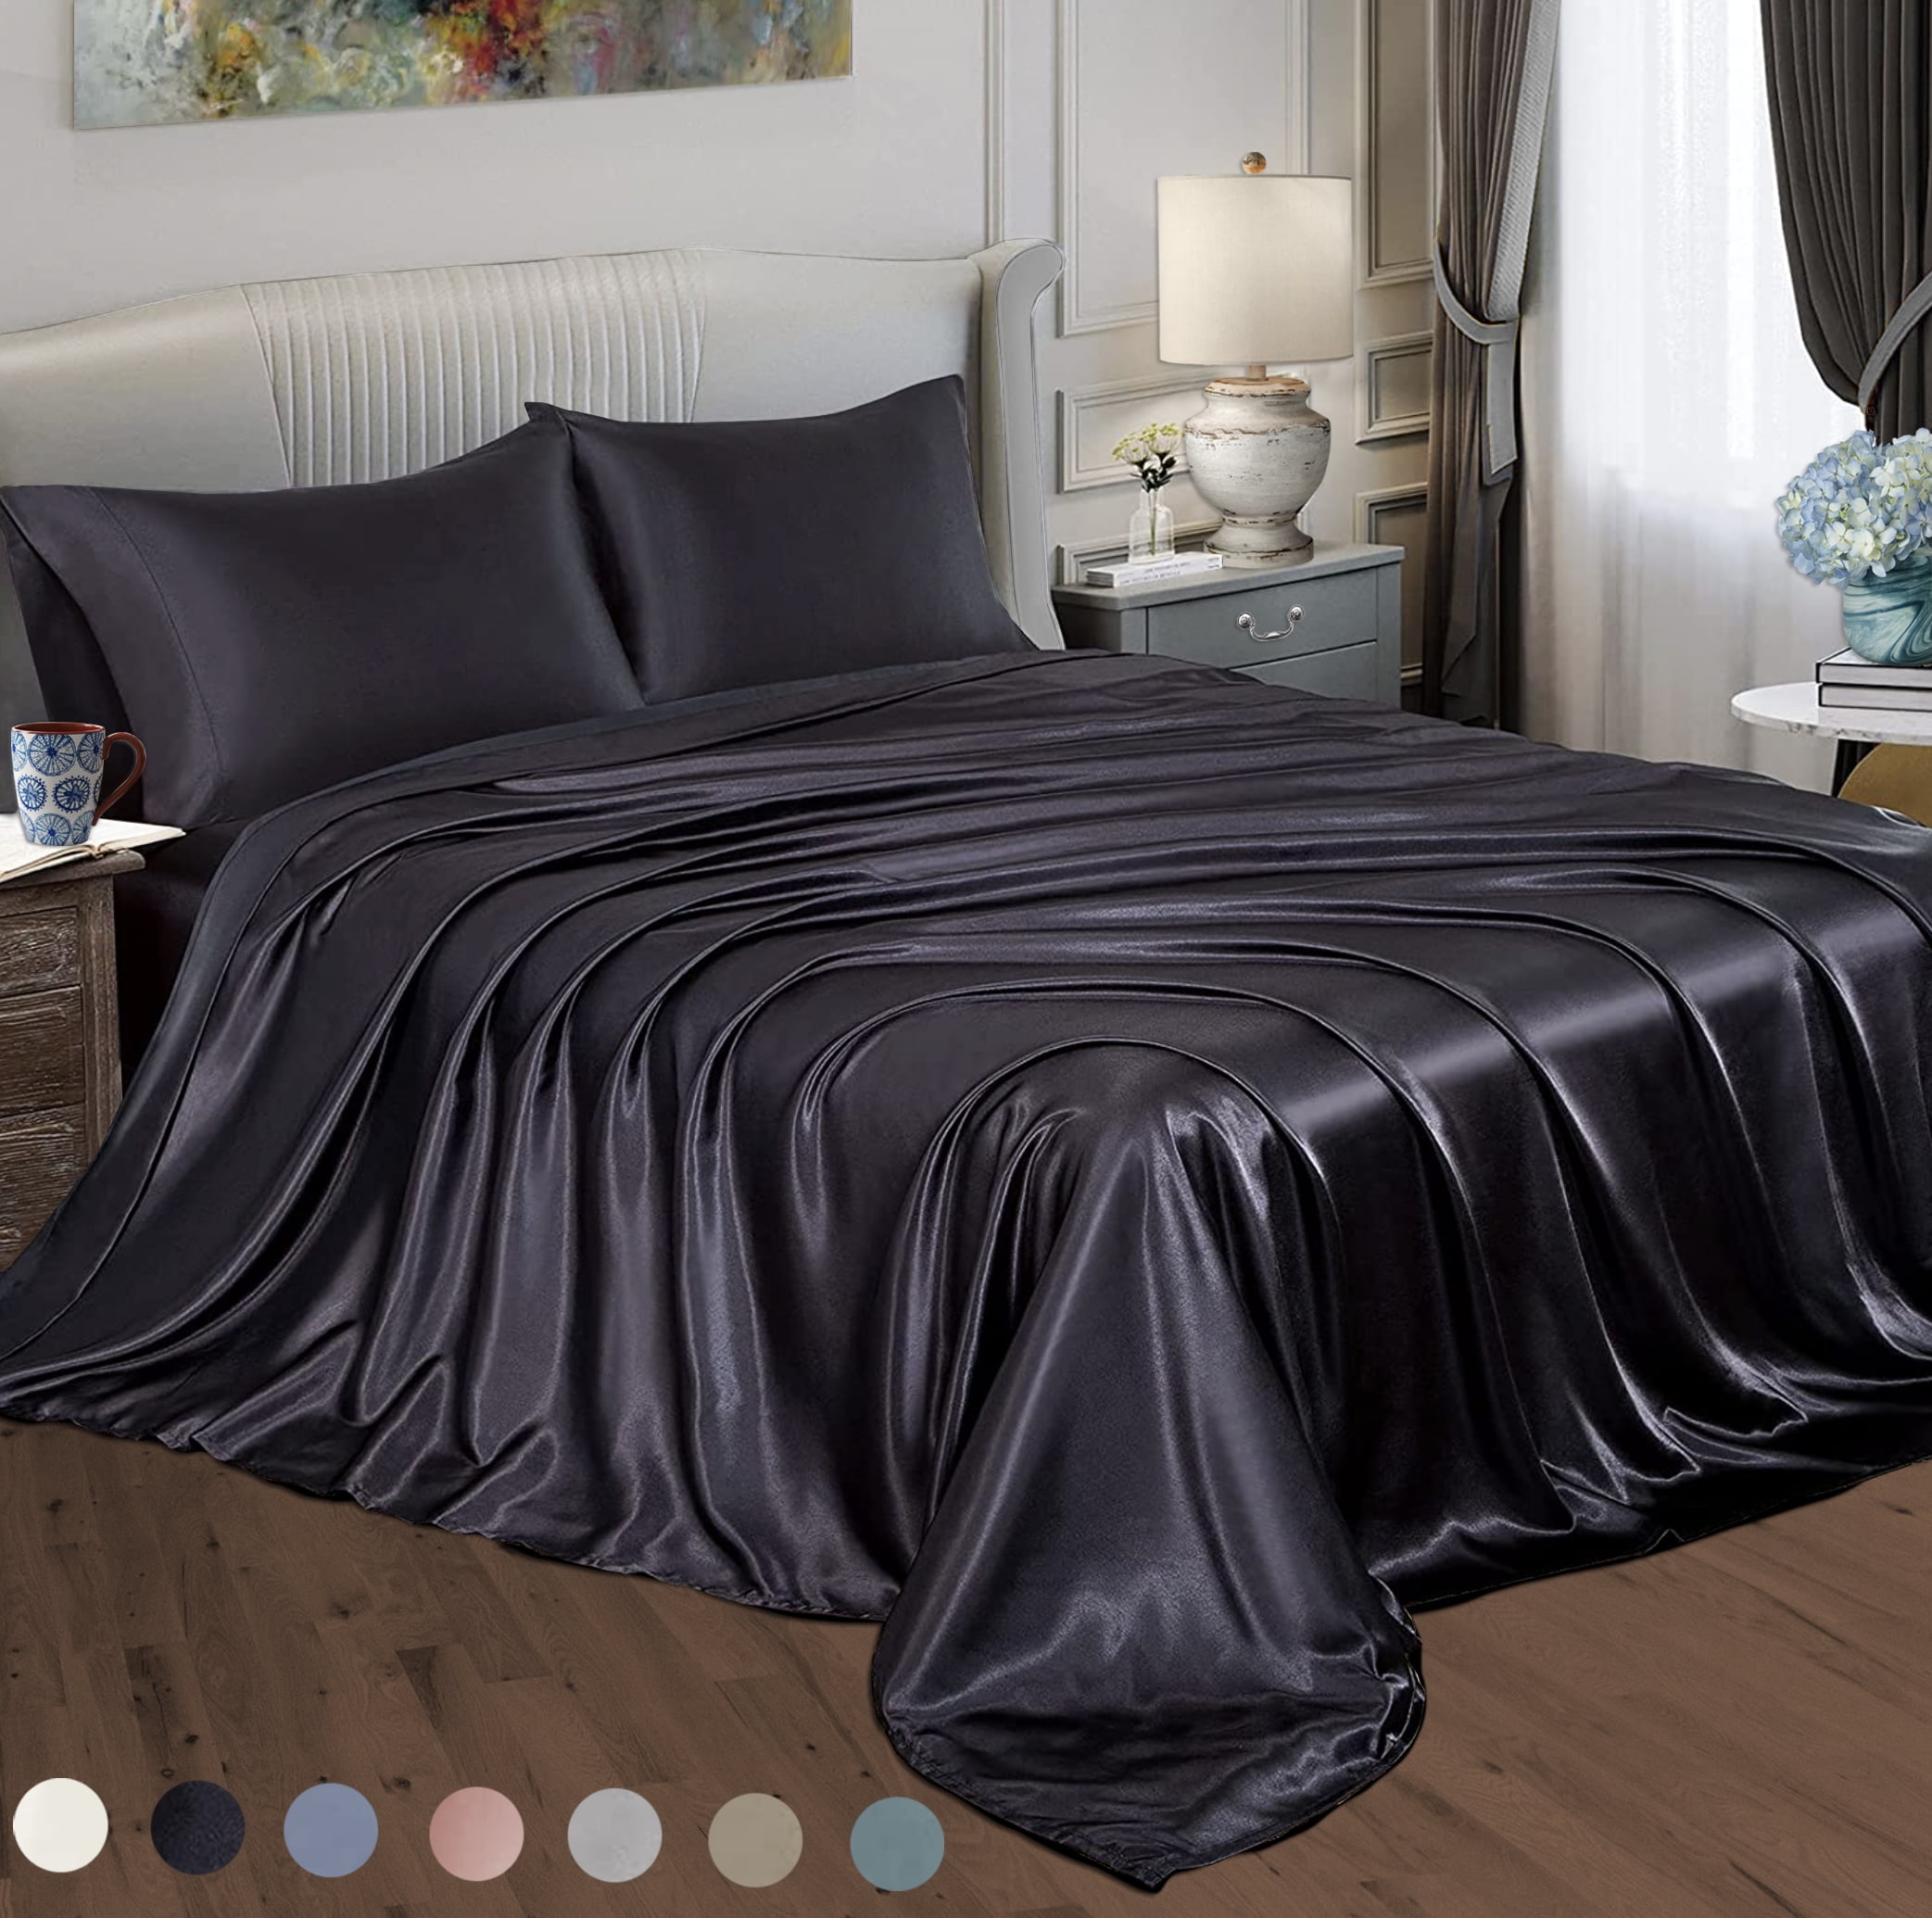 1 Pair Silky Soft Silk Pillow Case Beauty Pillowcase Bed Sleep Helper-Black 